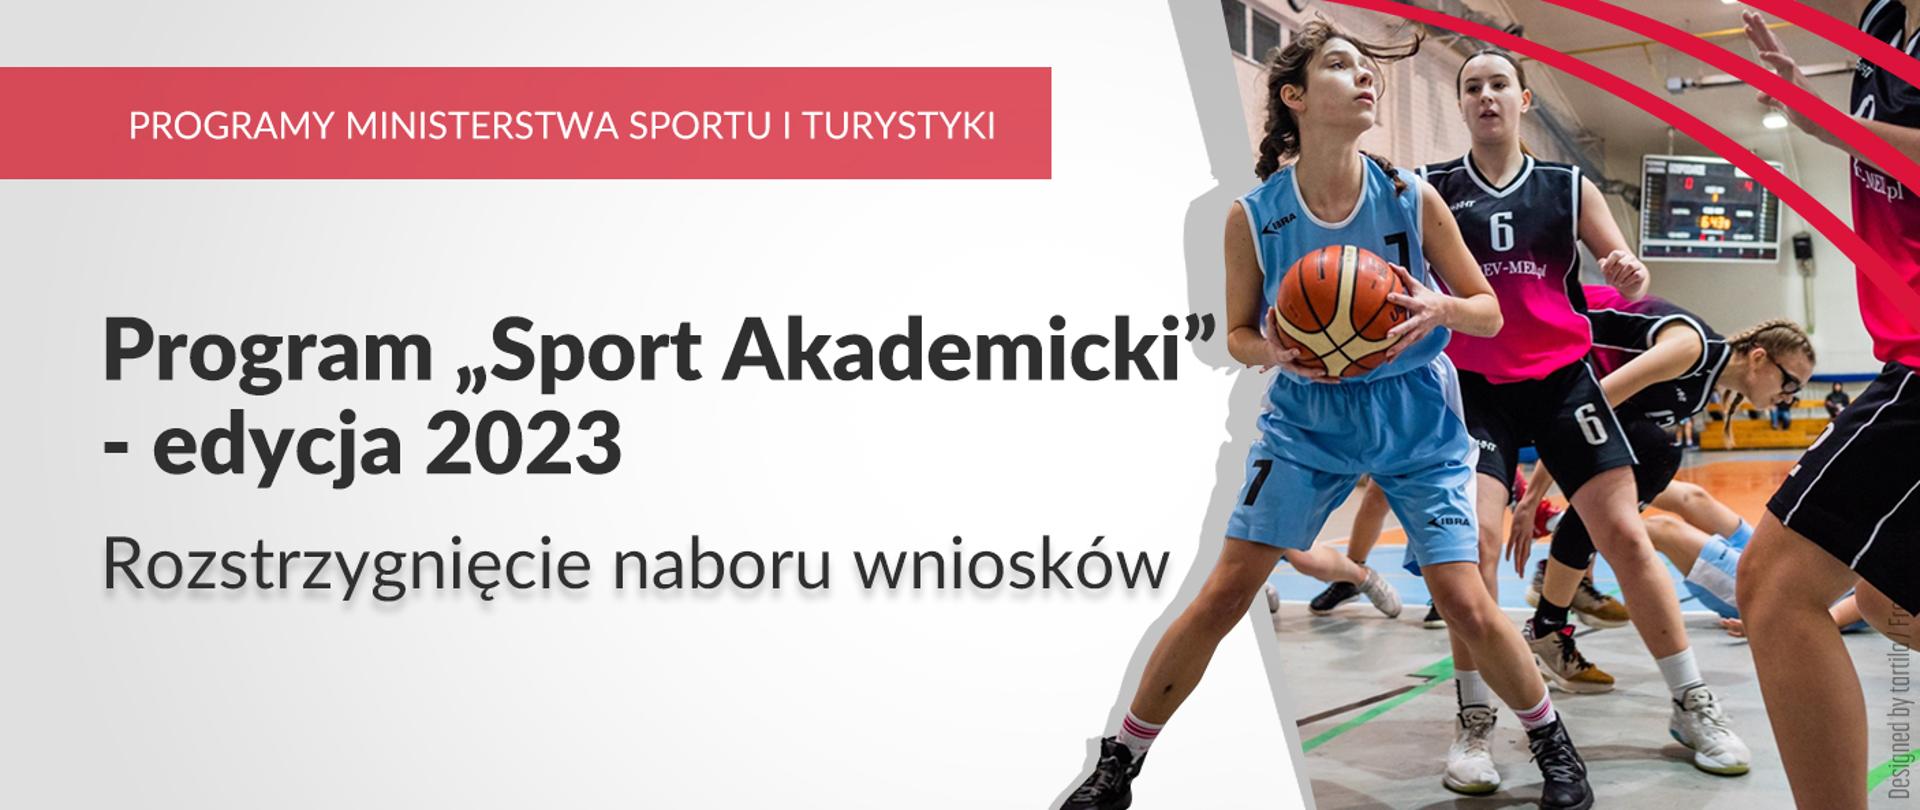 Program Sport Akademicki - edycja 2023, rozstrzygnięcie naboru wniosków. Na zdjęciu koszykarki